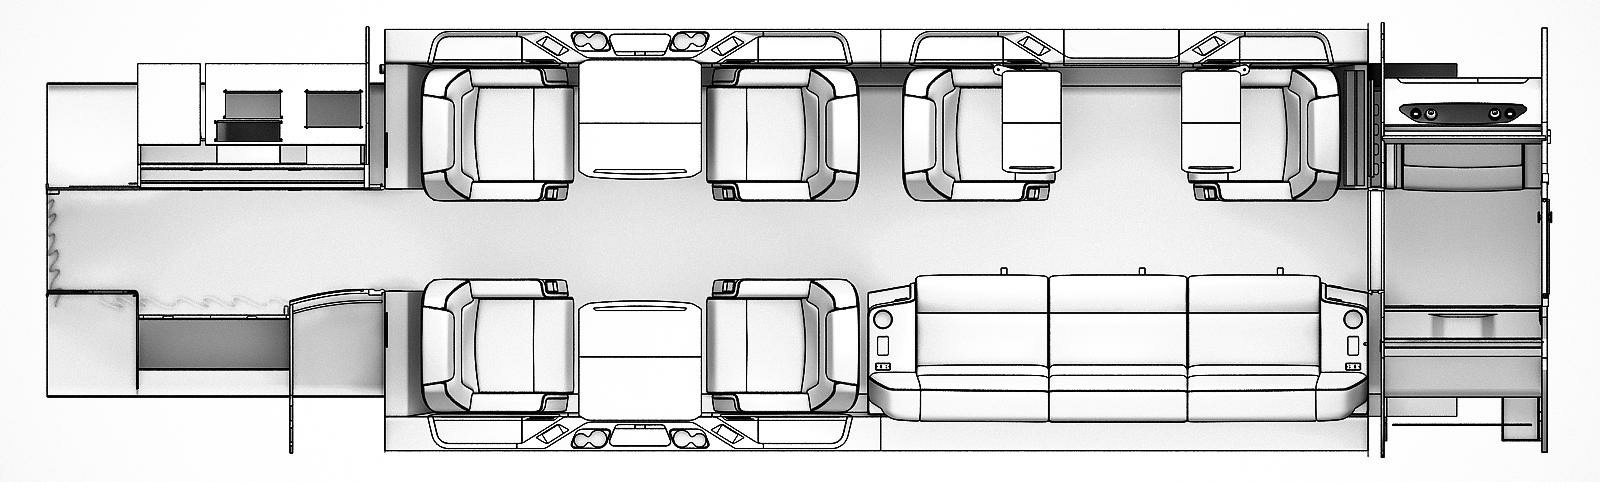 План салона Bombardier Challenger 350